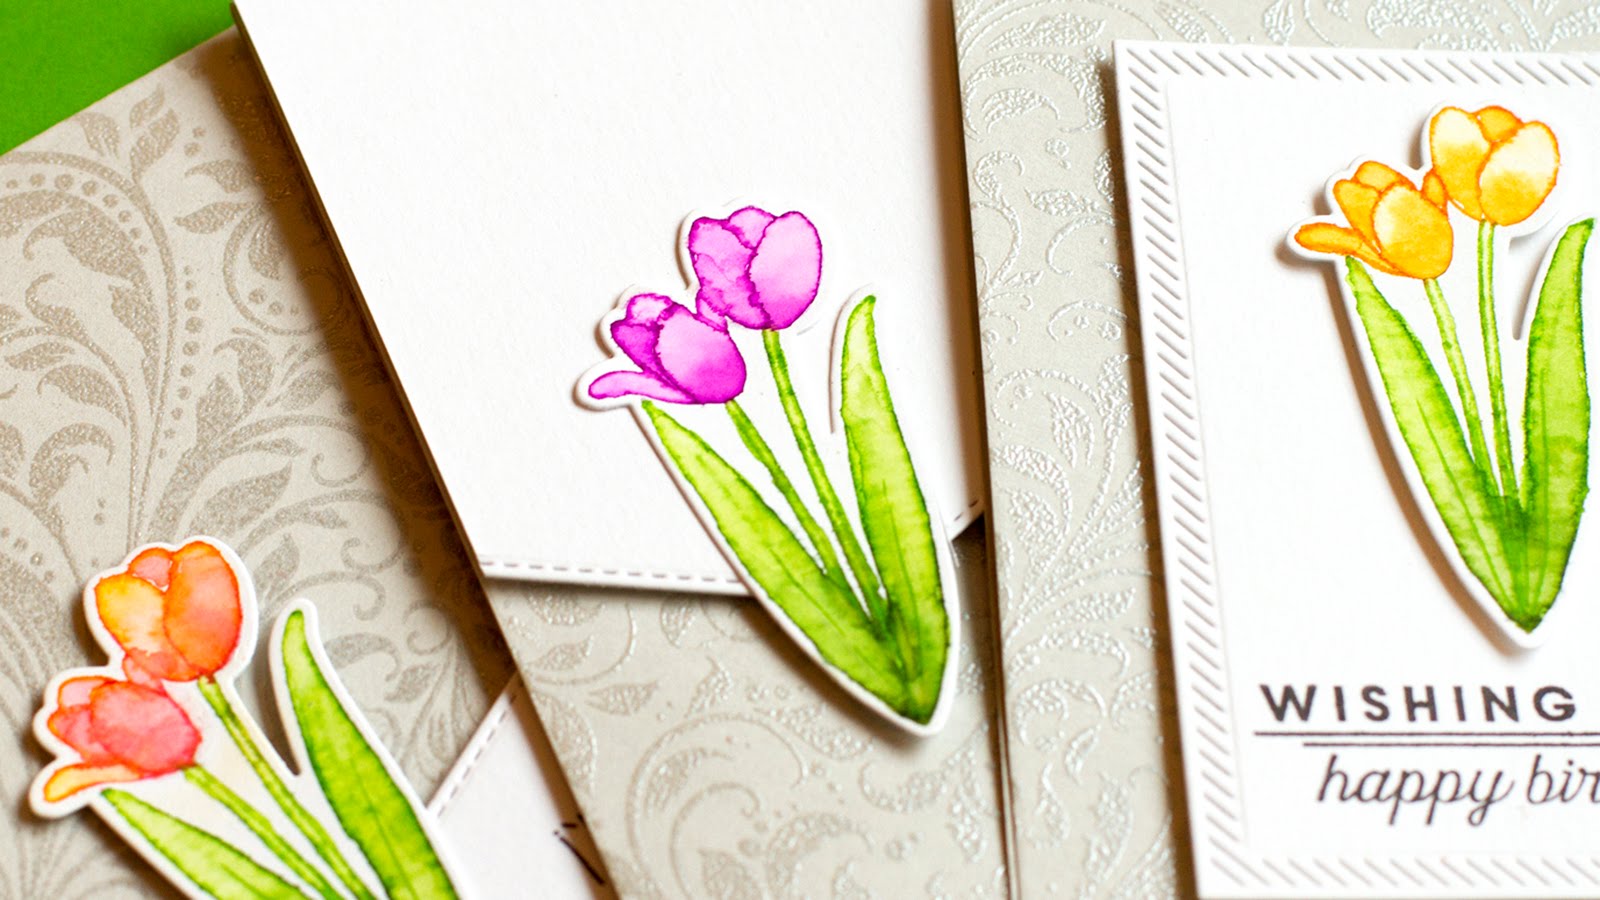 Hướng dẫn cách vẽ hoa trang trí thiệp đơn giản cho ngày lễ trở nên ý nghĩa